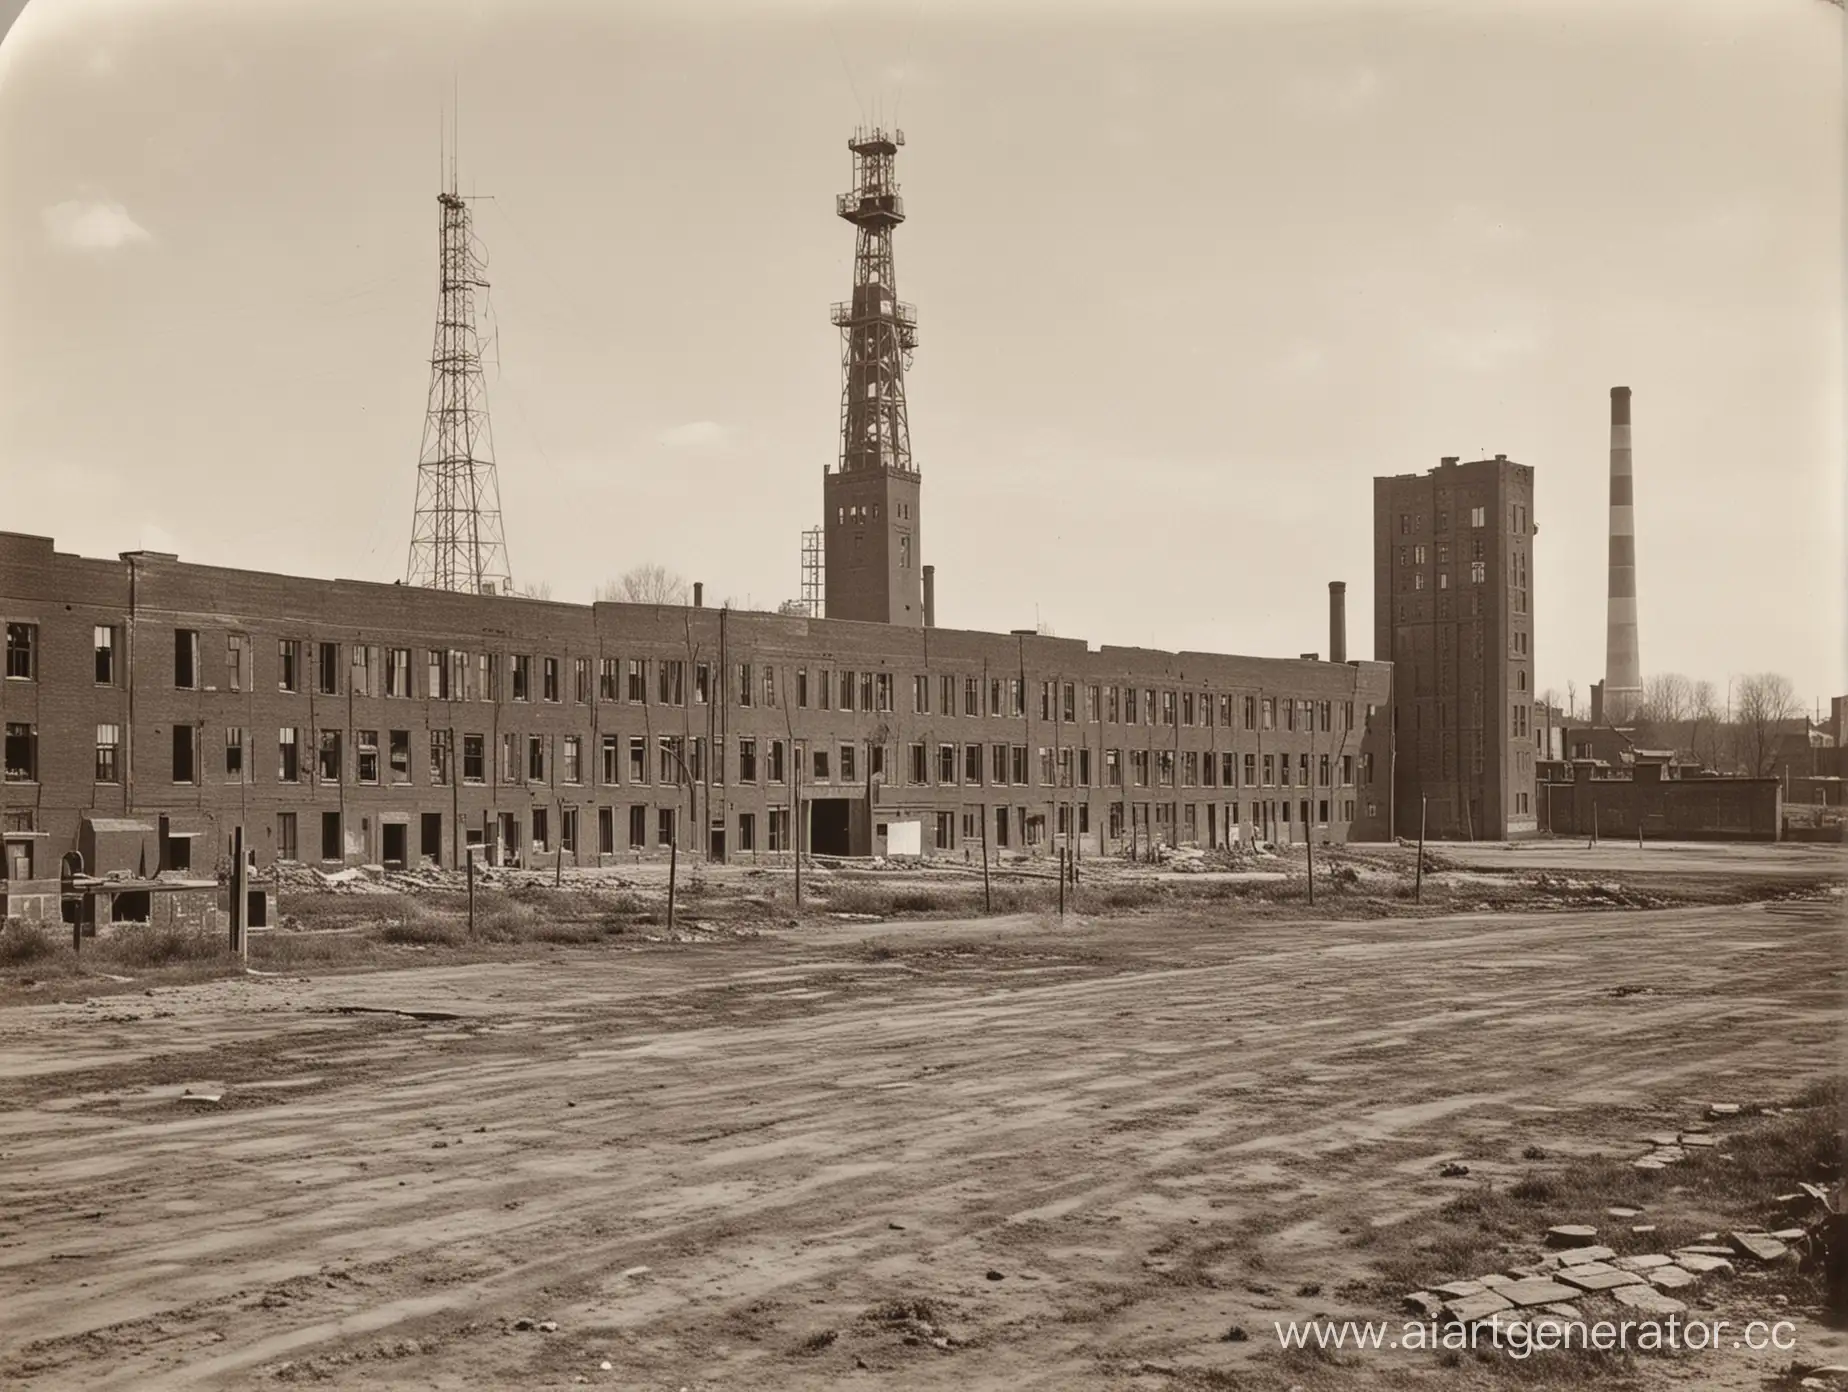 кирпичная фабрика. Архитектура 1920-х. Огромные окна. В центре квадратная башня с телефонной вышкой. По бокам от неё корпуса.